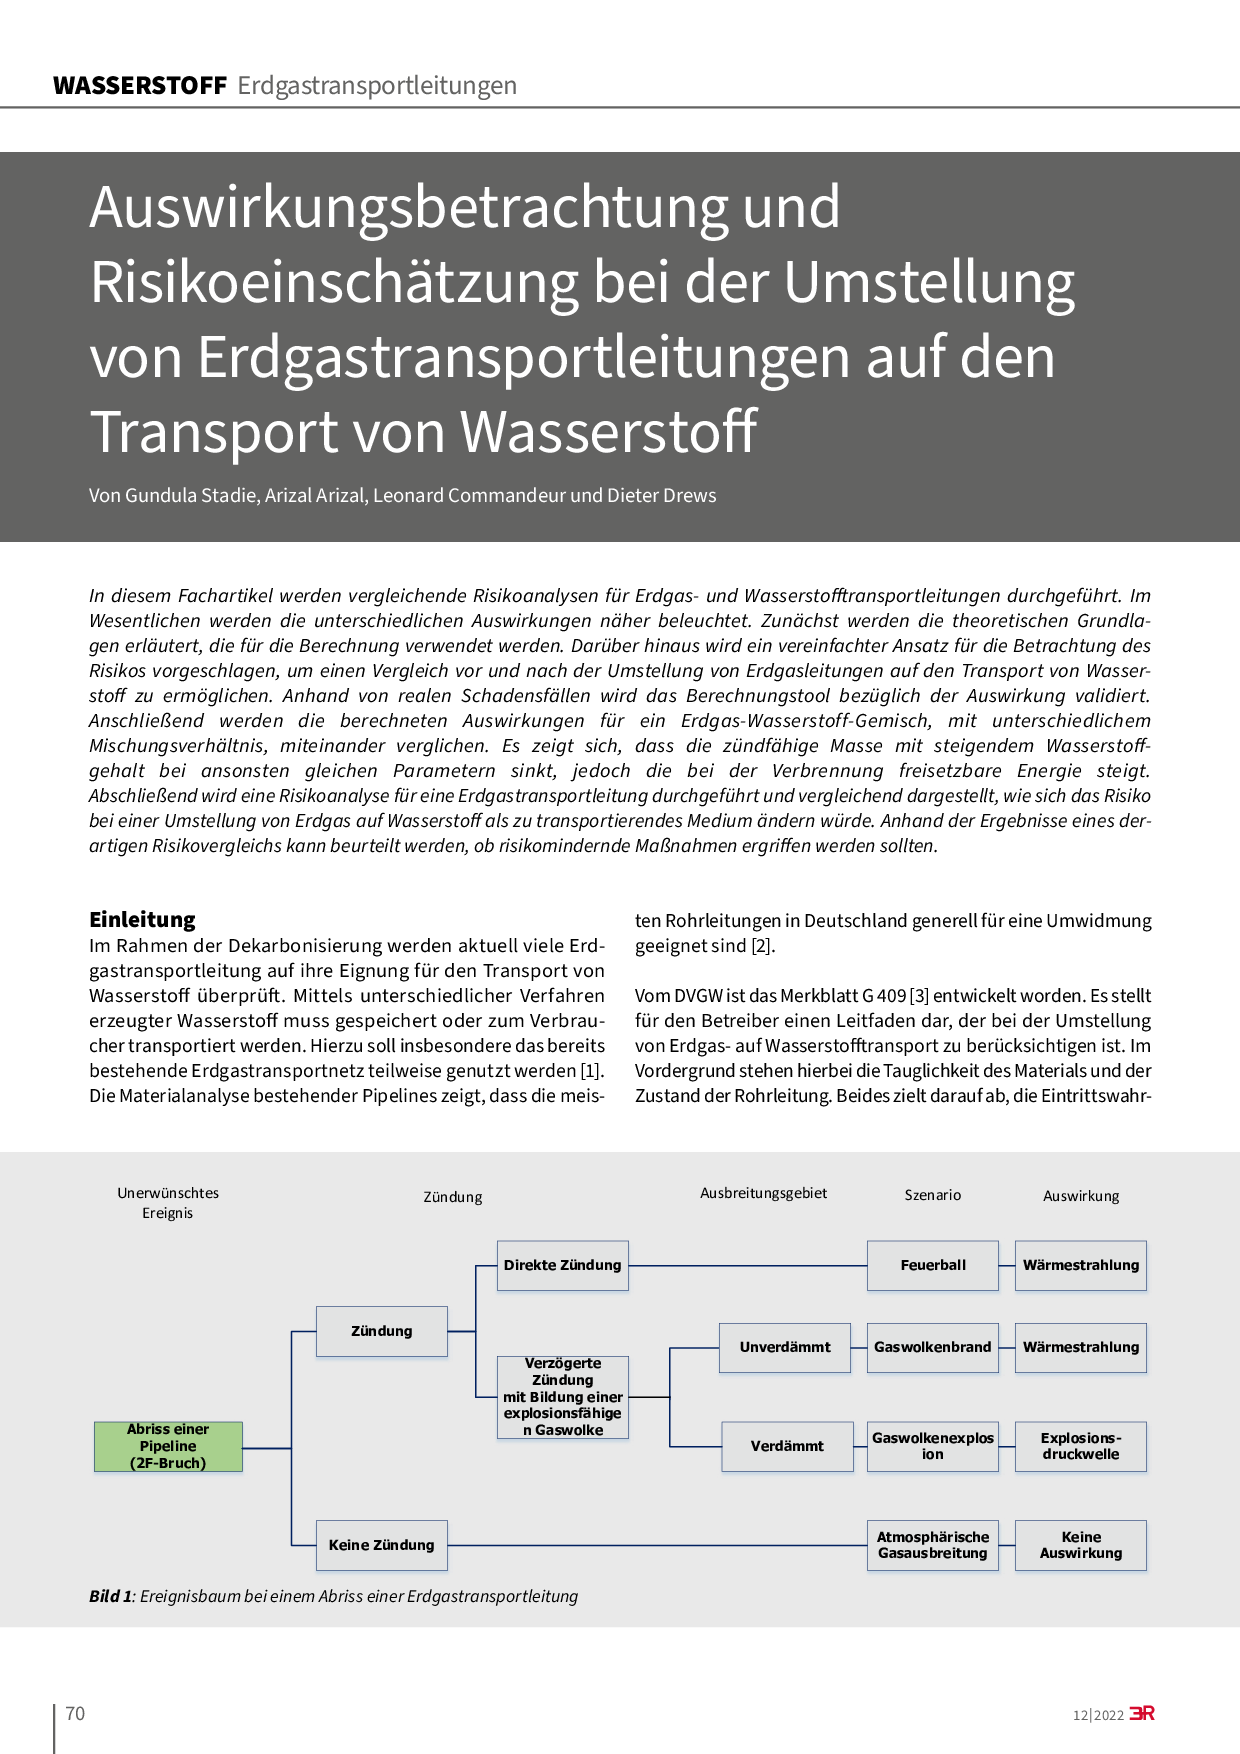 Auswirkungsbetrachtung und Risikoeinschätzung bei der Umstellung von Erdgastransportleitungen auf den Transport von Wasserstoff